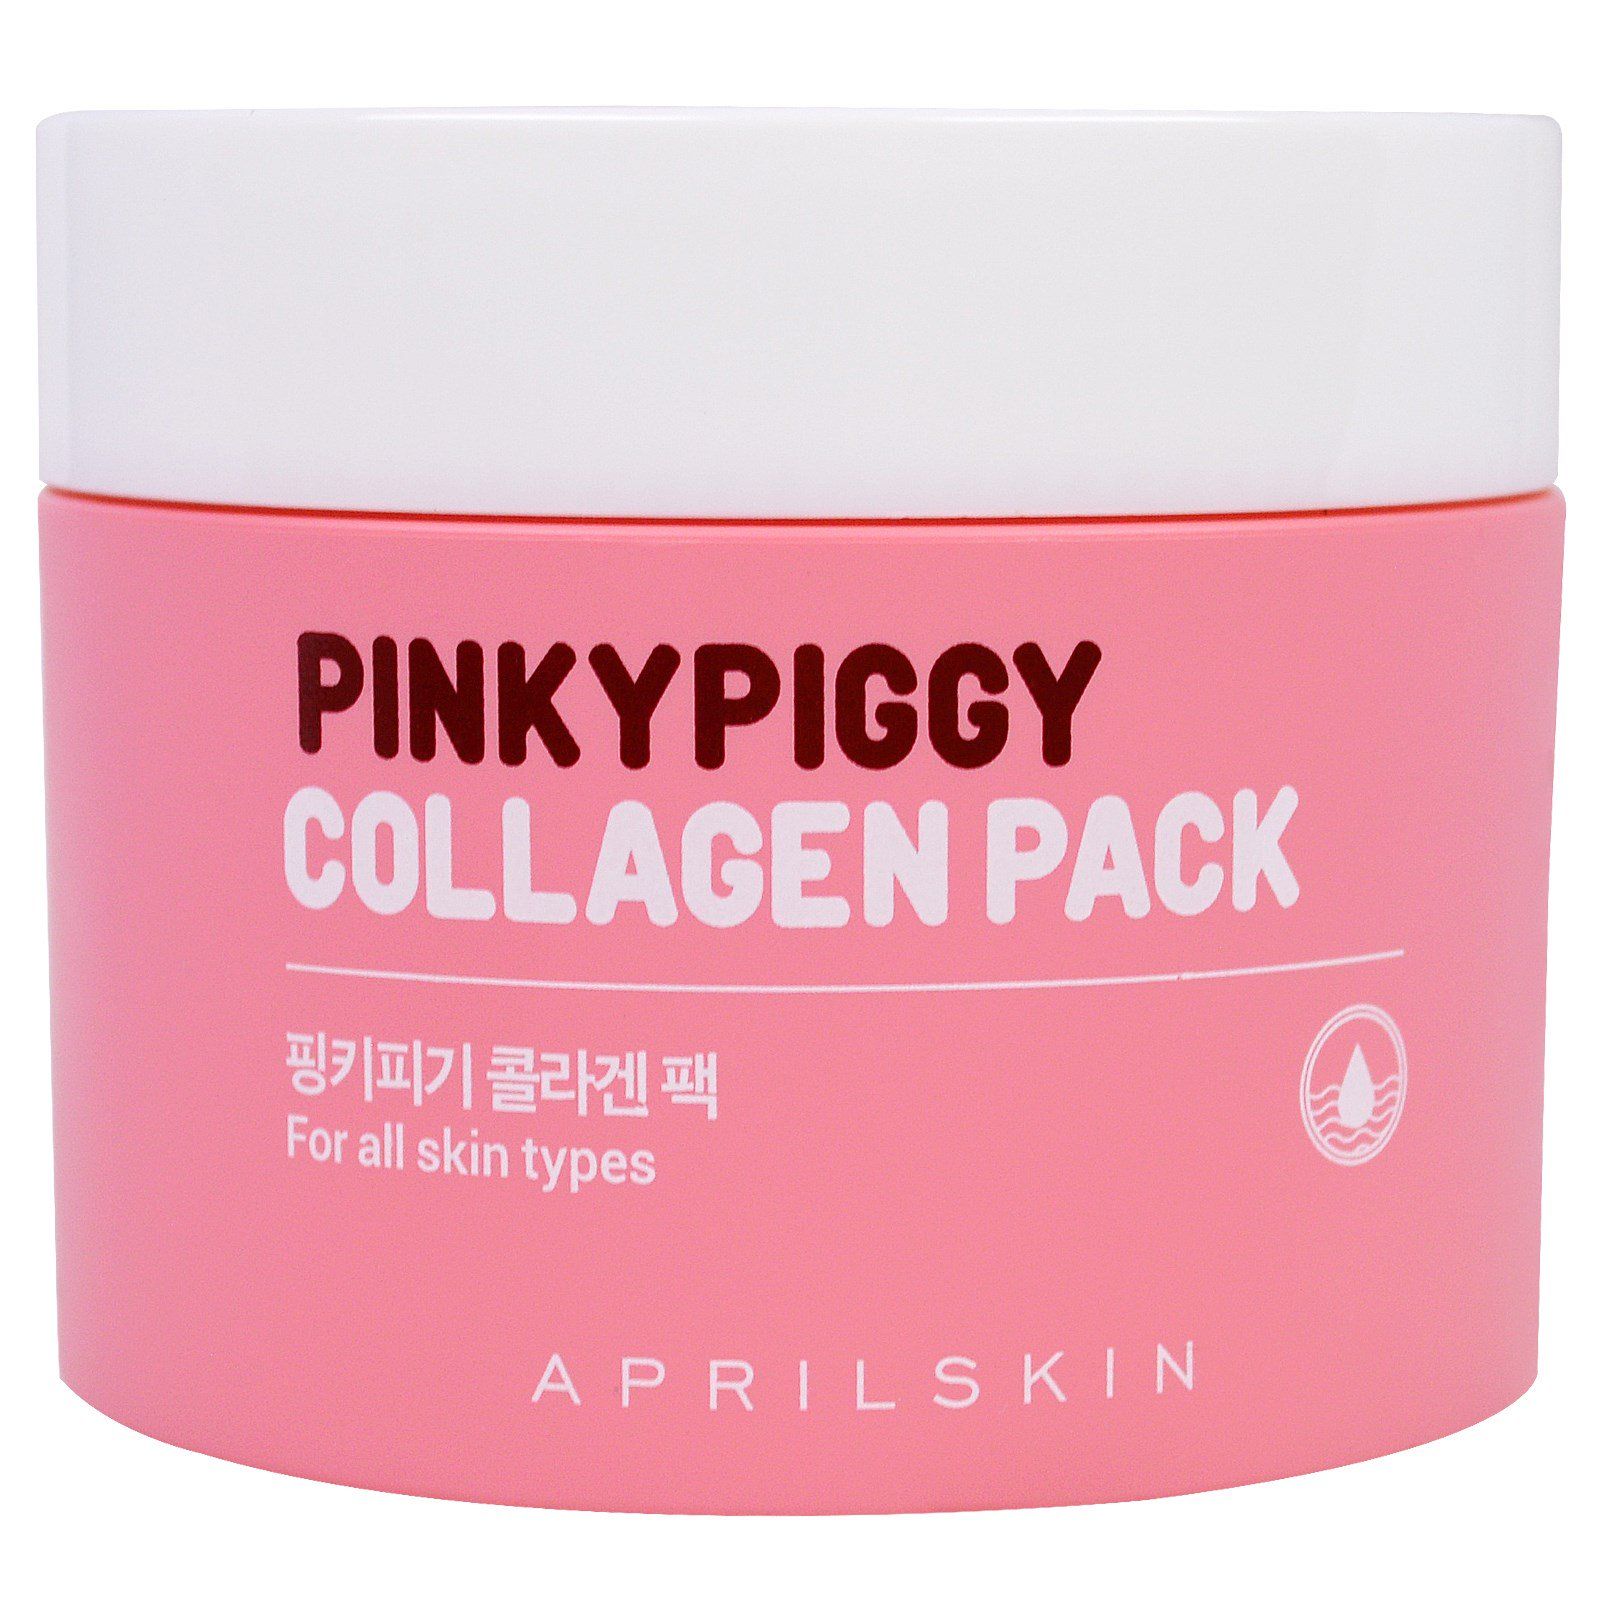 Смываемые корейские маски. Косметика на основе коллагена. April Skin косметика. Пигги Пинк корейский магазин.